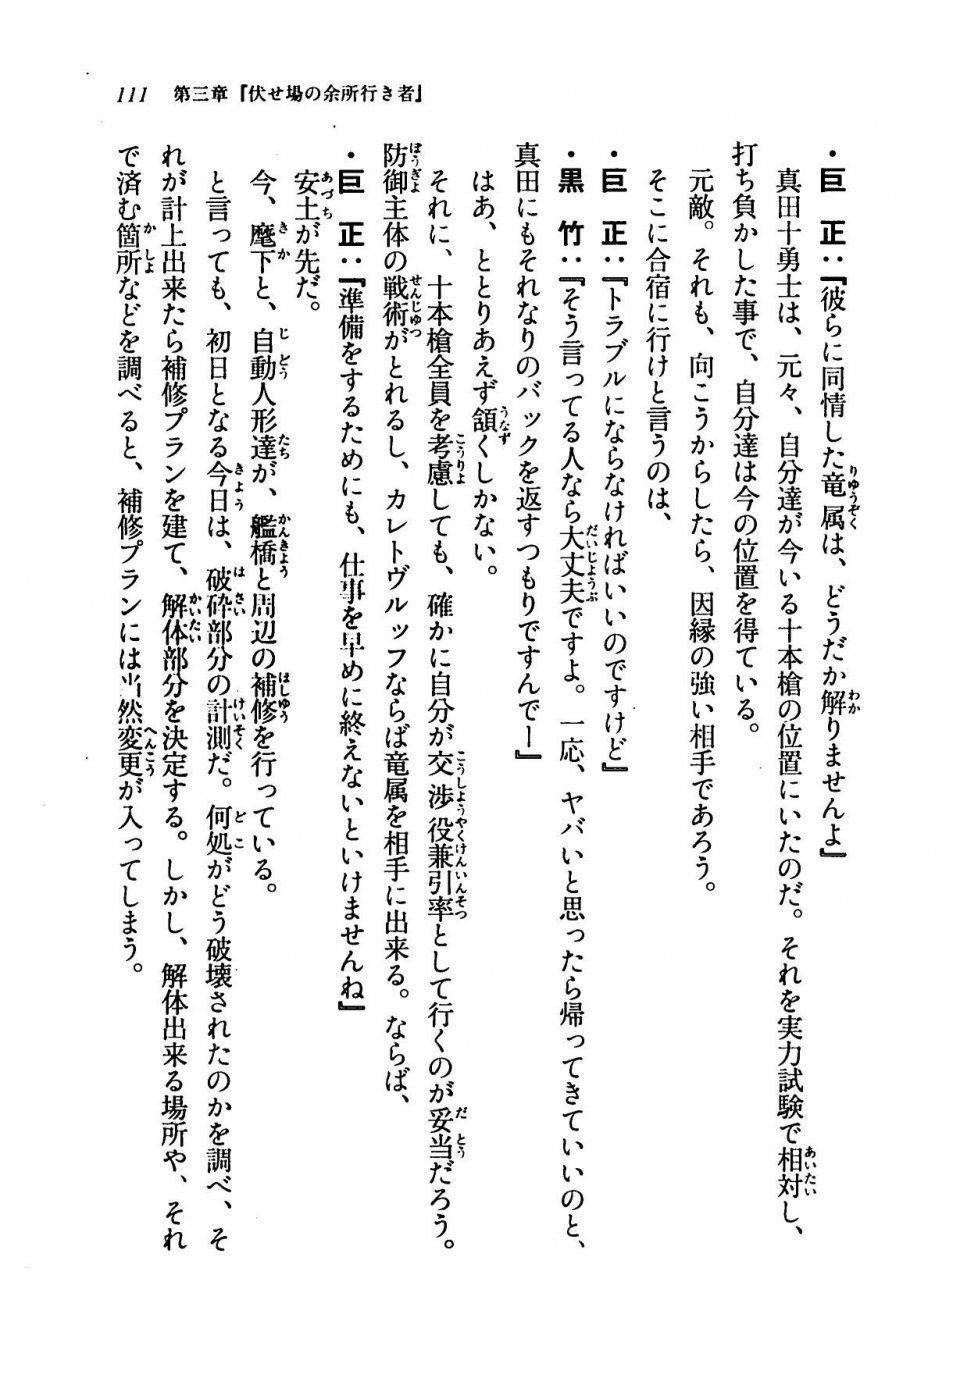 Kyoukai Senjou no Horizon LN Vol 19(8A) - Photo #111